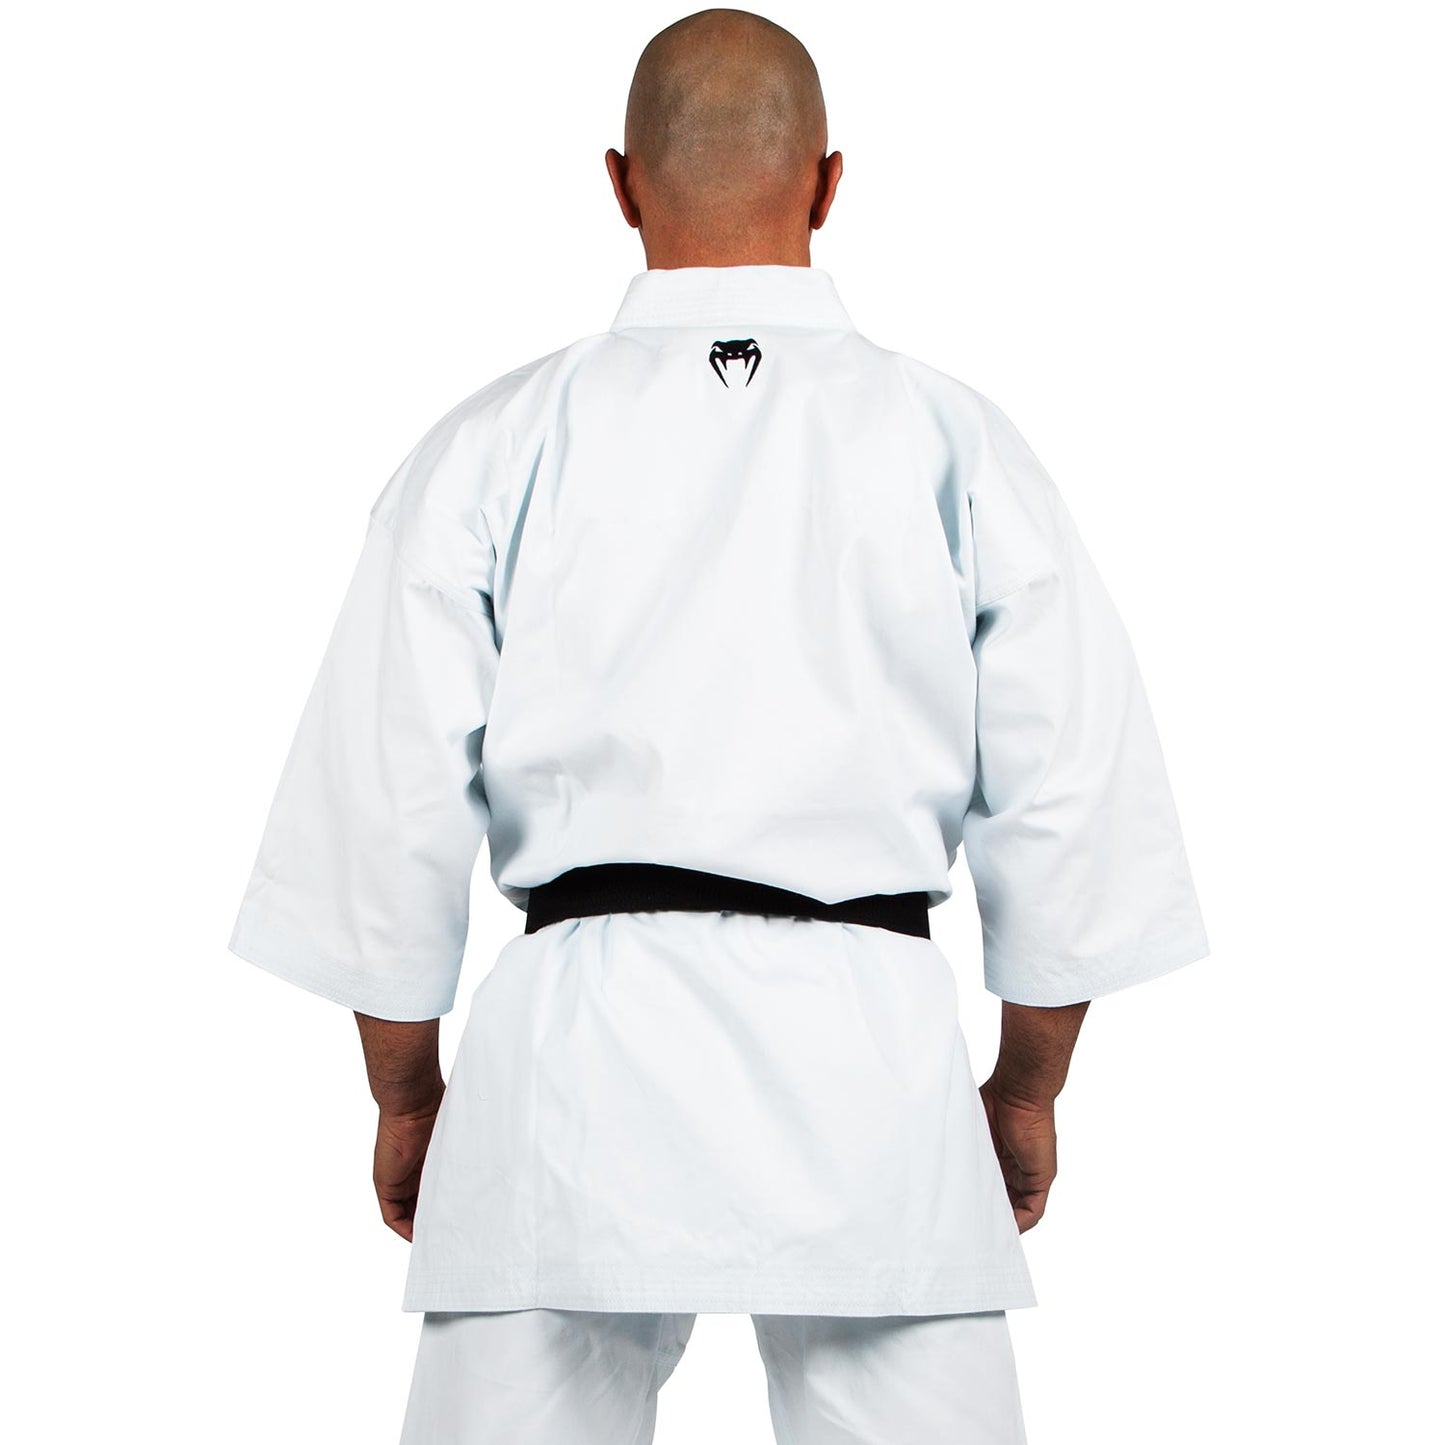 Gi da Karate Venum Absolute - Bianco